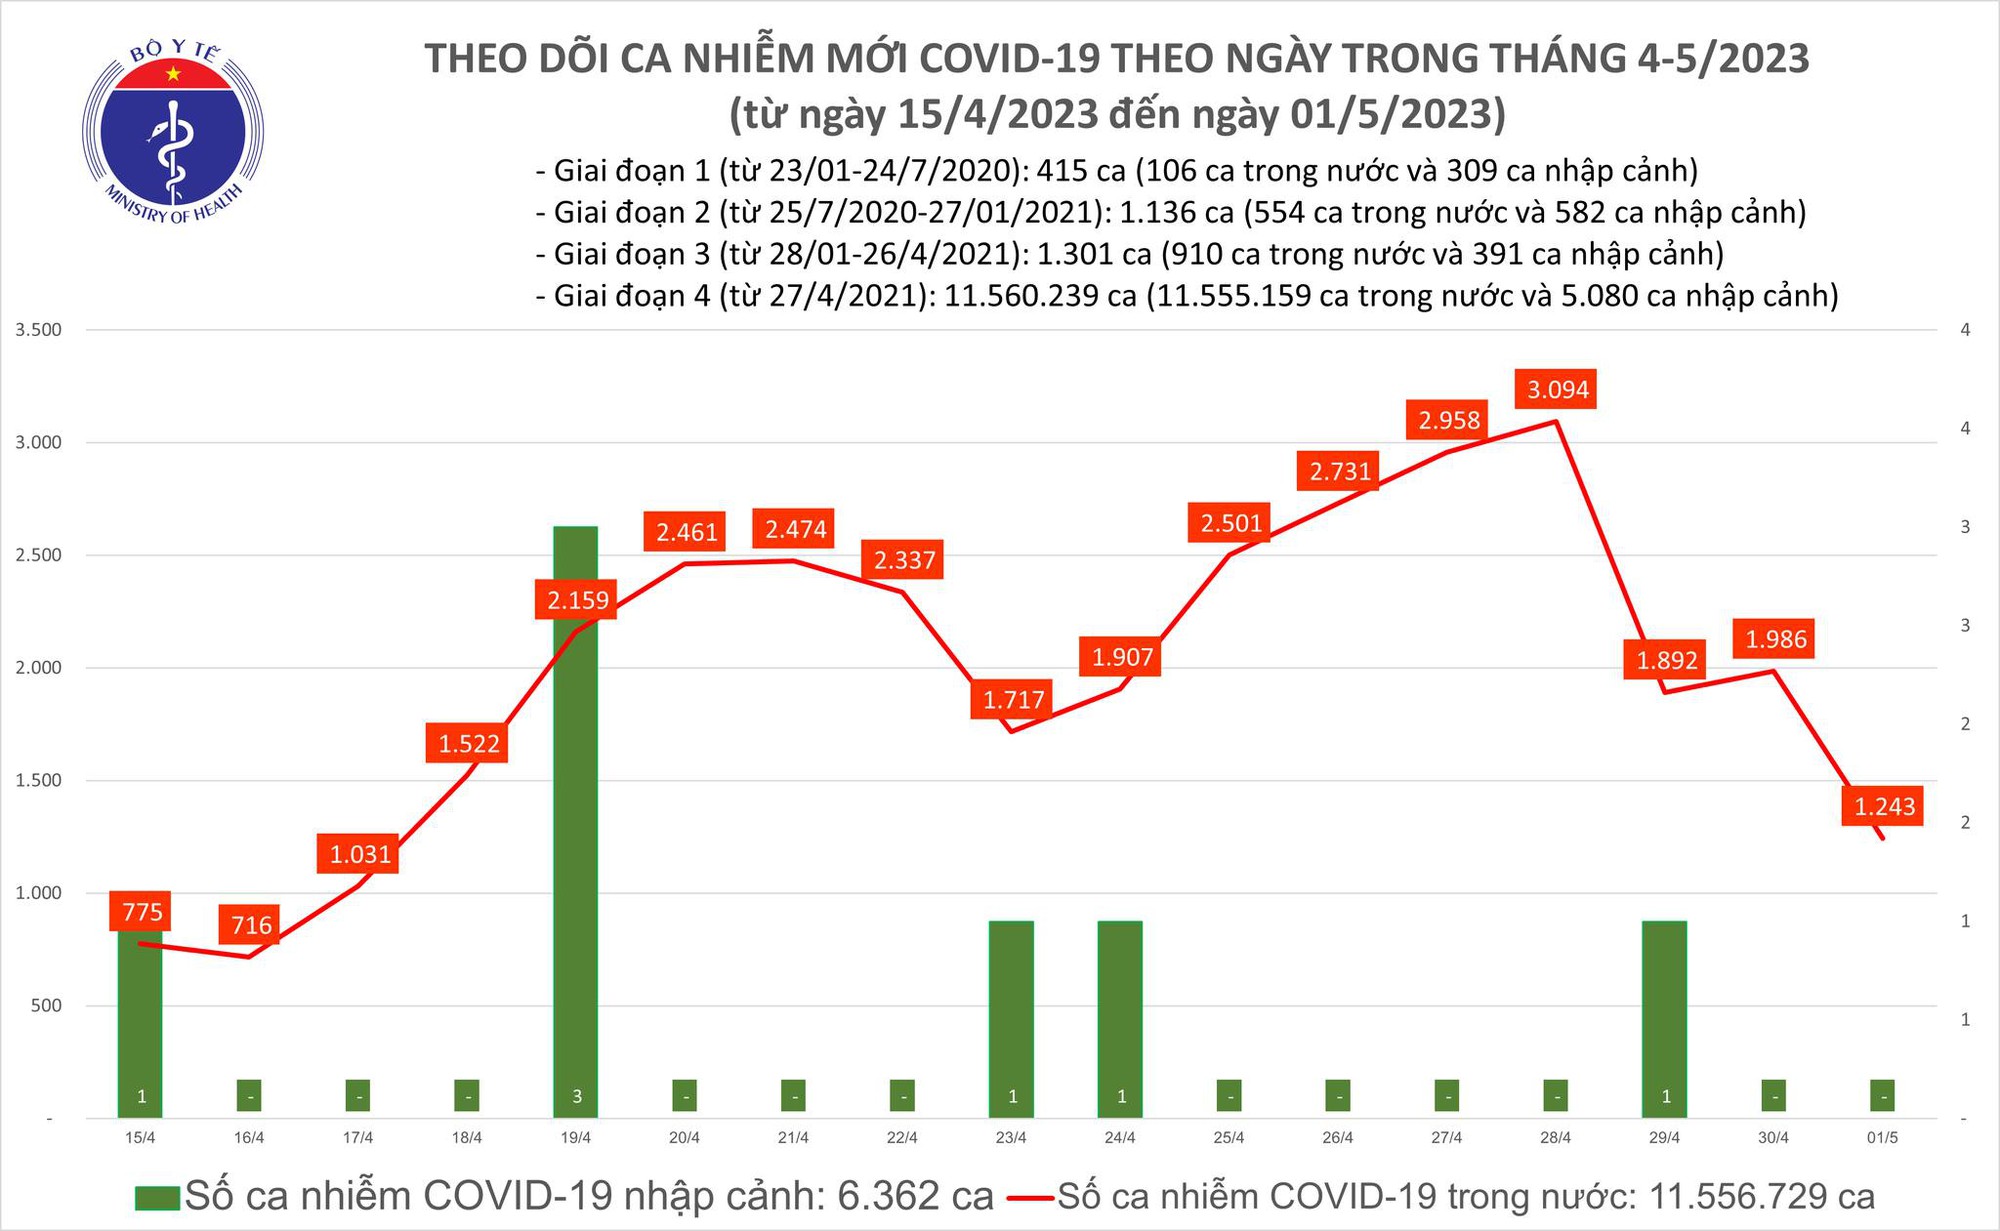 Ngày 1/5: Số người mắc COVID-19 mới giảm còn 1.243 ca - Ảnh 2.